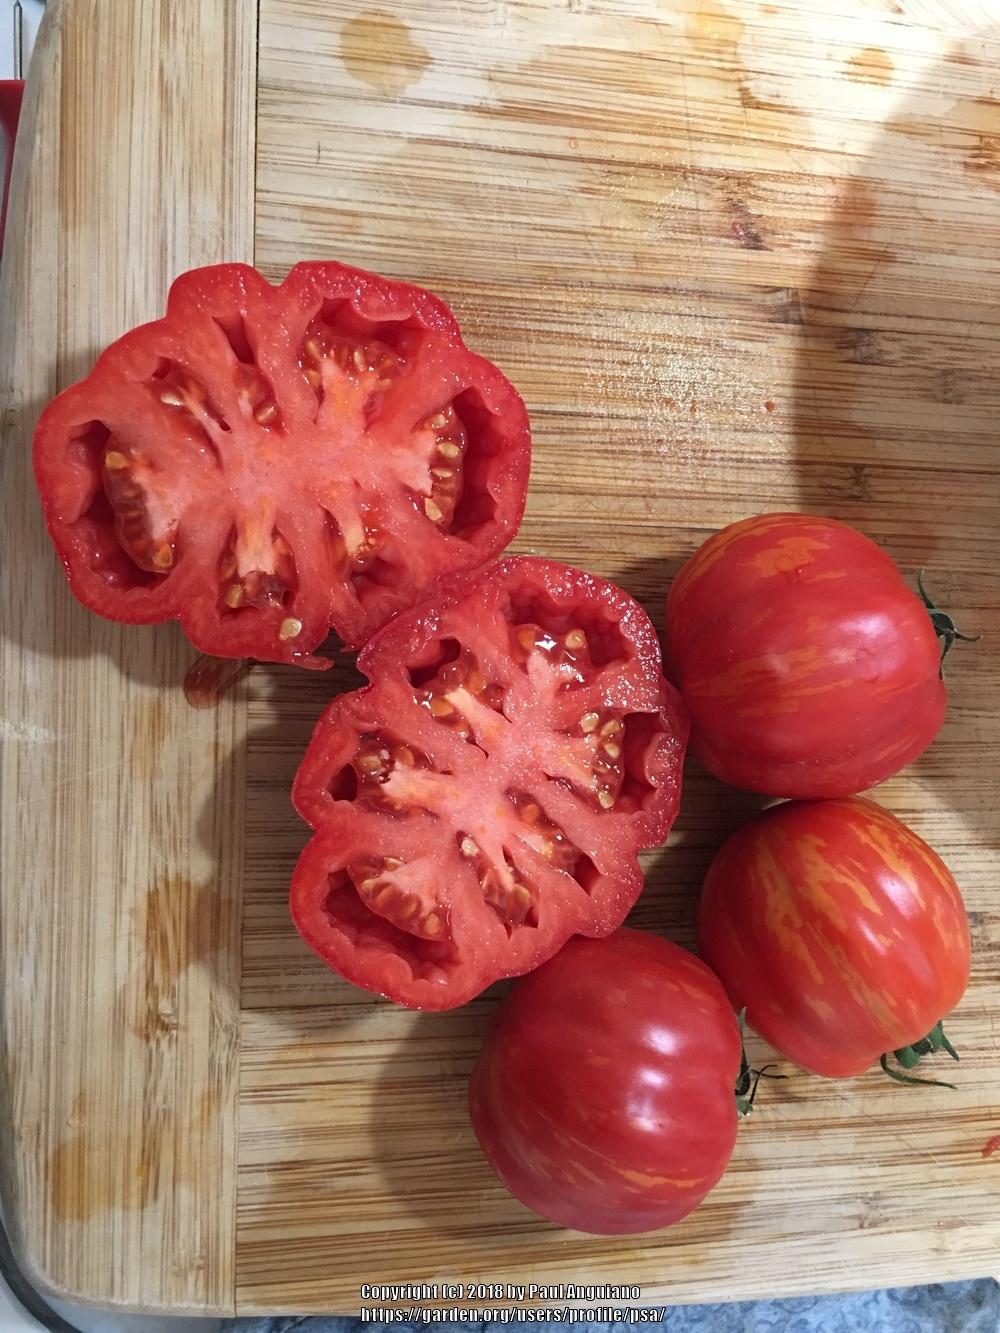 Photo of Tomato (Solanum lycopersicum 'Forshmak') uploaded by psa